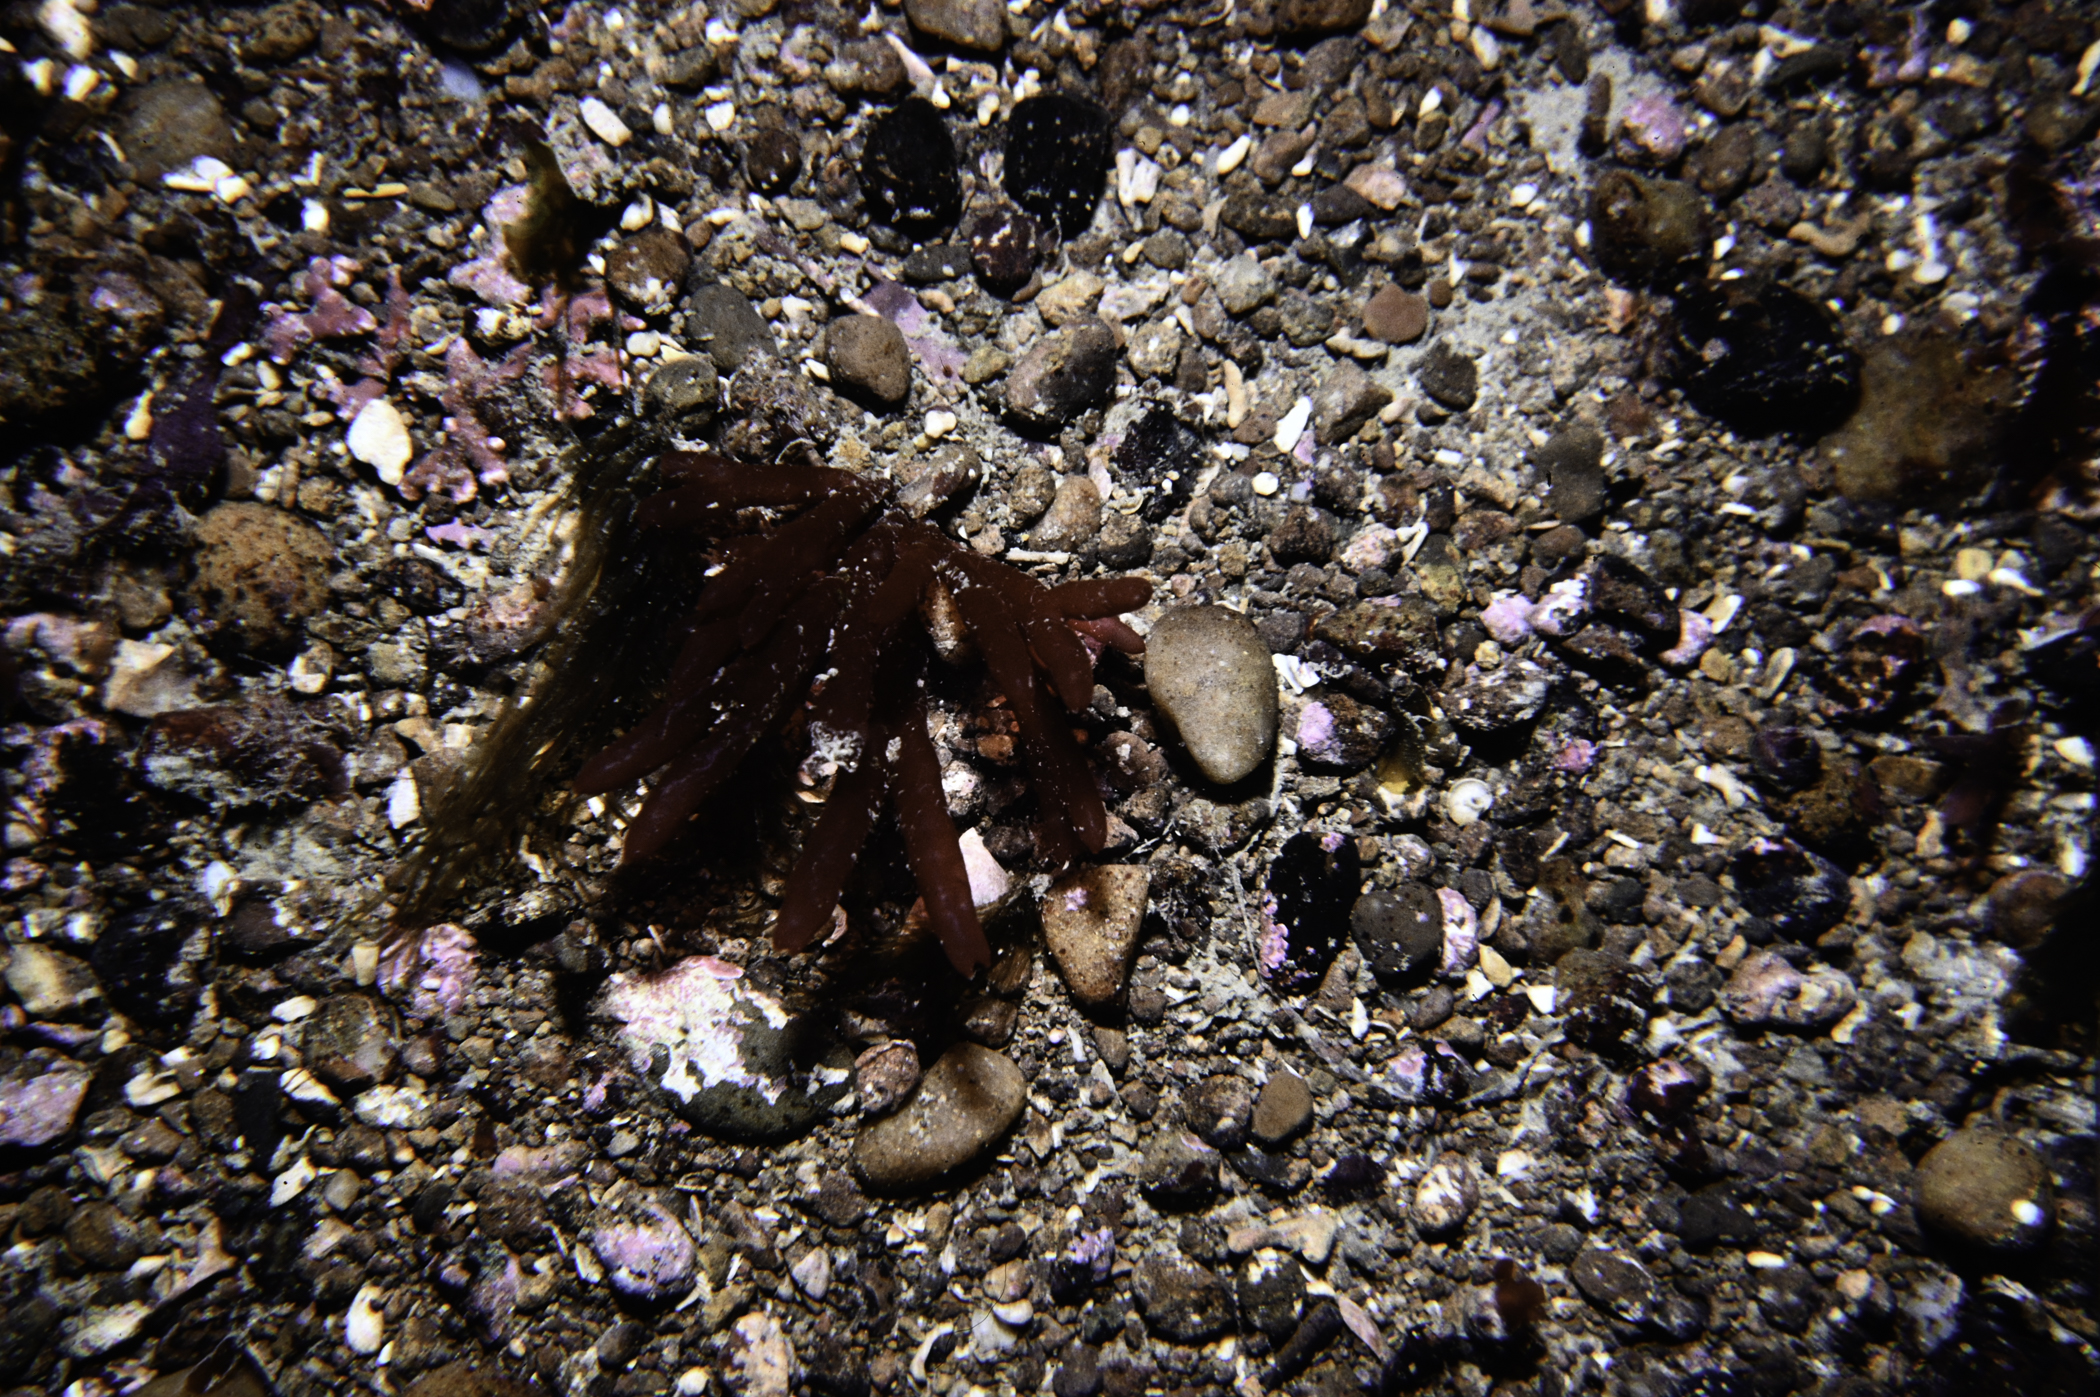 Scinaia interrupta, Lithophyllum crouanii. Site: Cushendun Bay. 